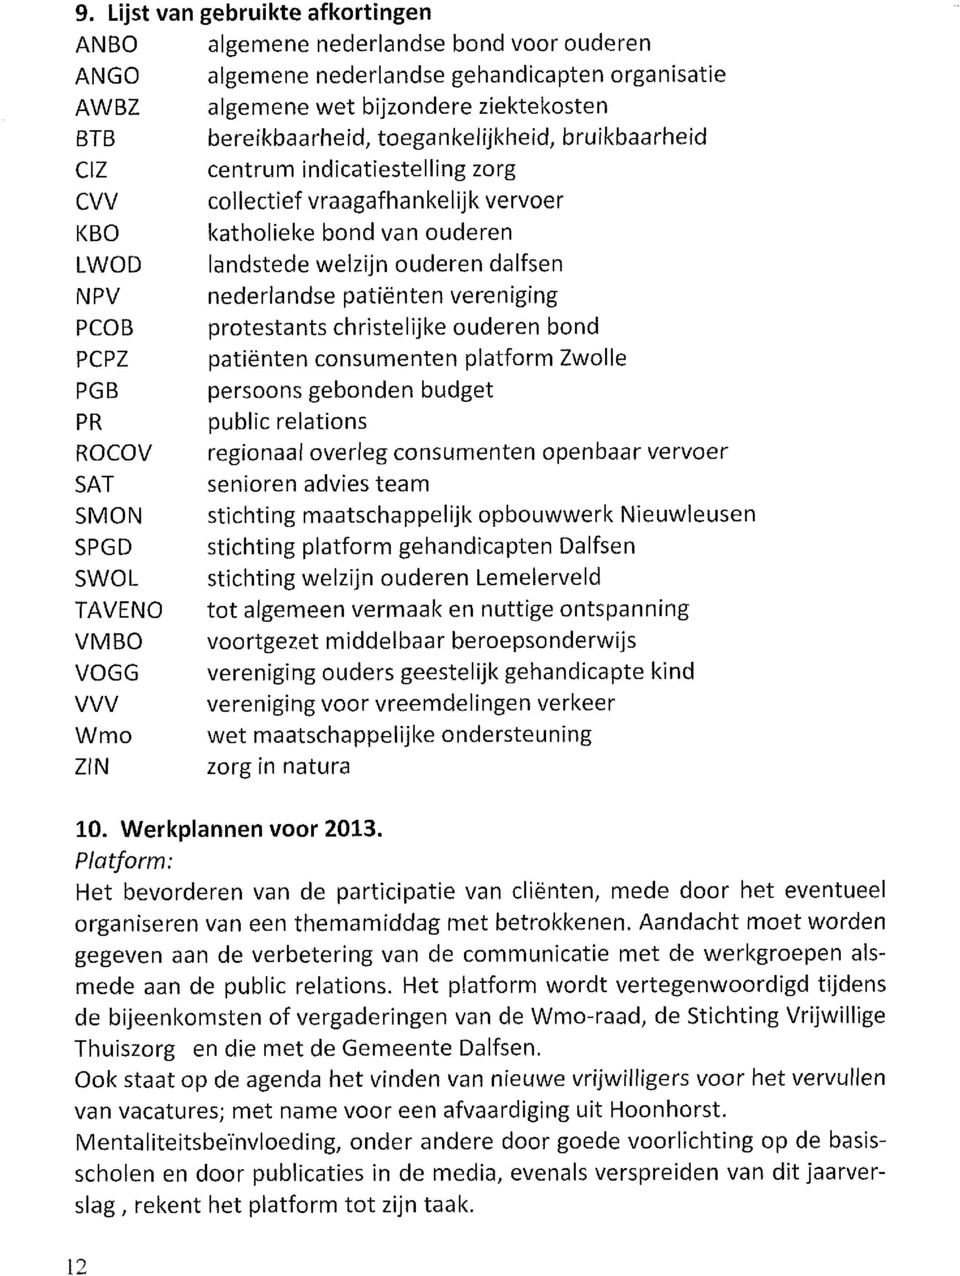 patiënten vereniging PCOB protestants christelijke ouderen bond PCPZ patiënten consumenten platform Zwolle PGB persoons gebonden budget PR public relations ROCOV regionaal overleg consumenten